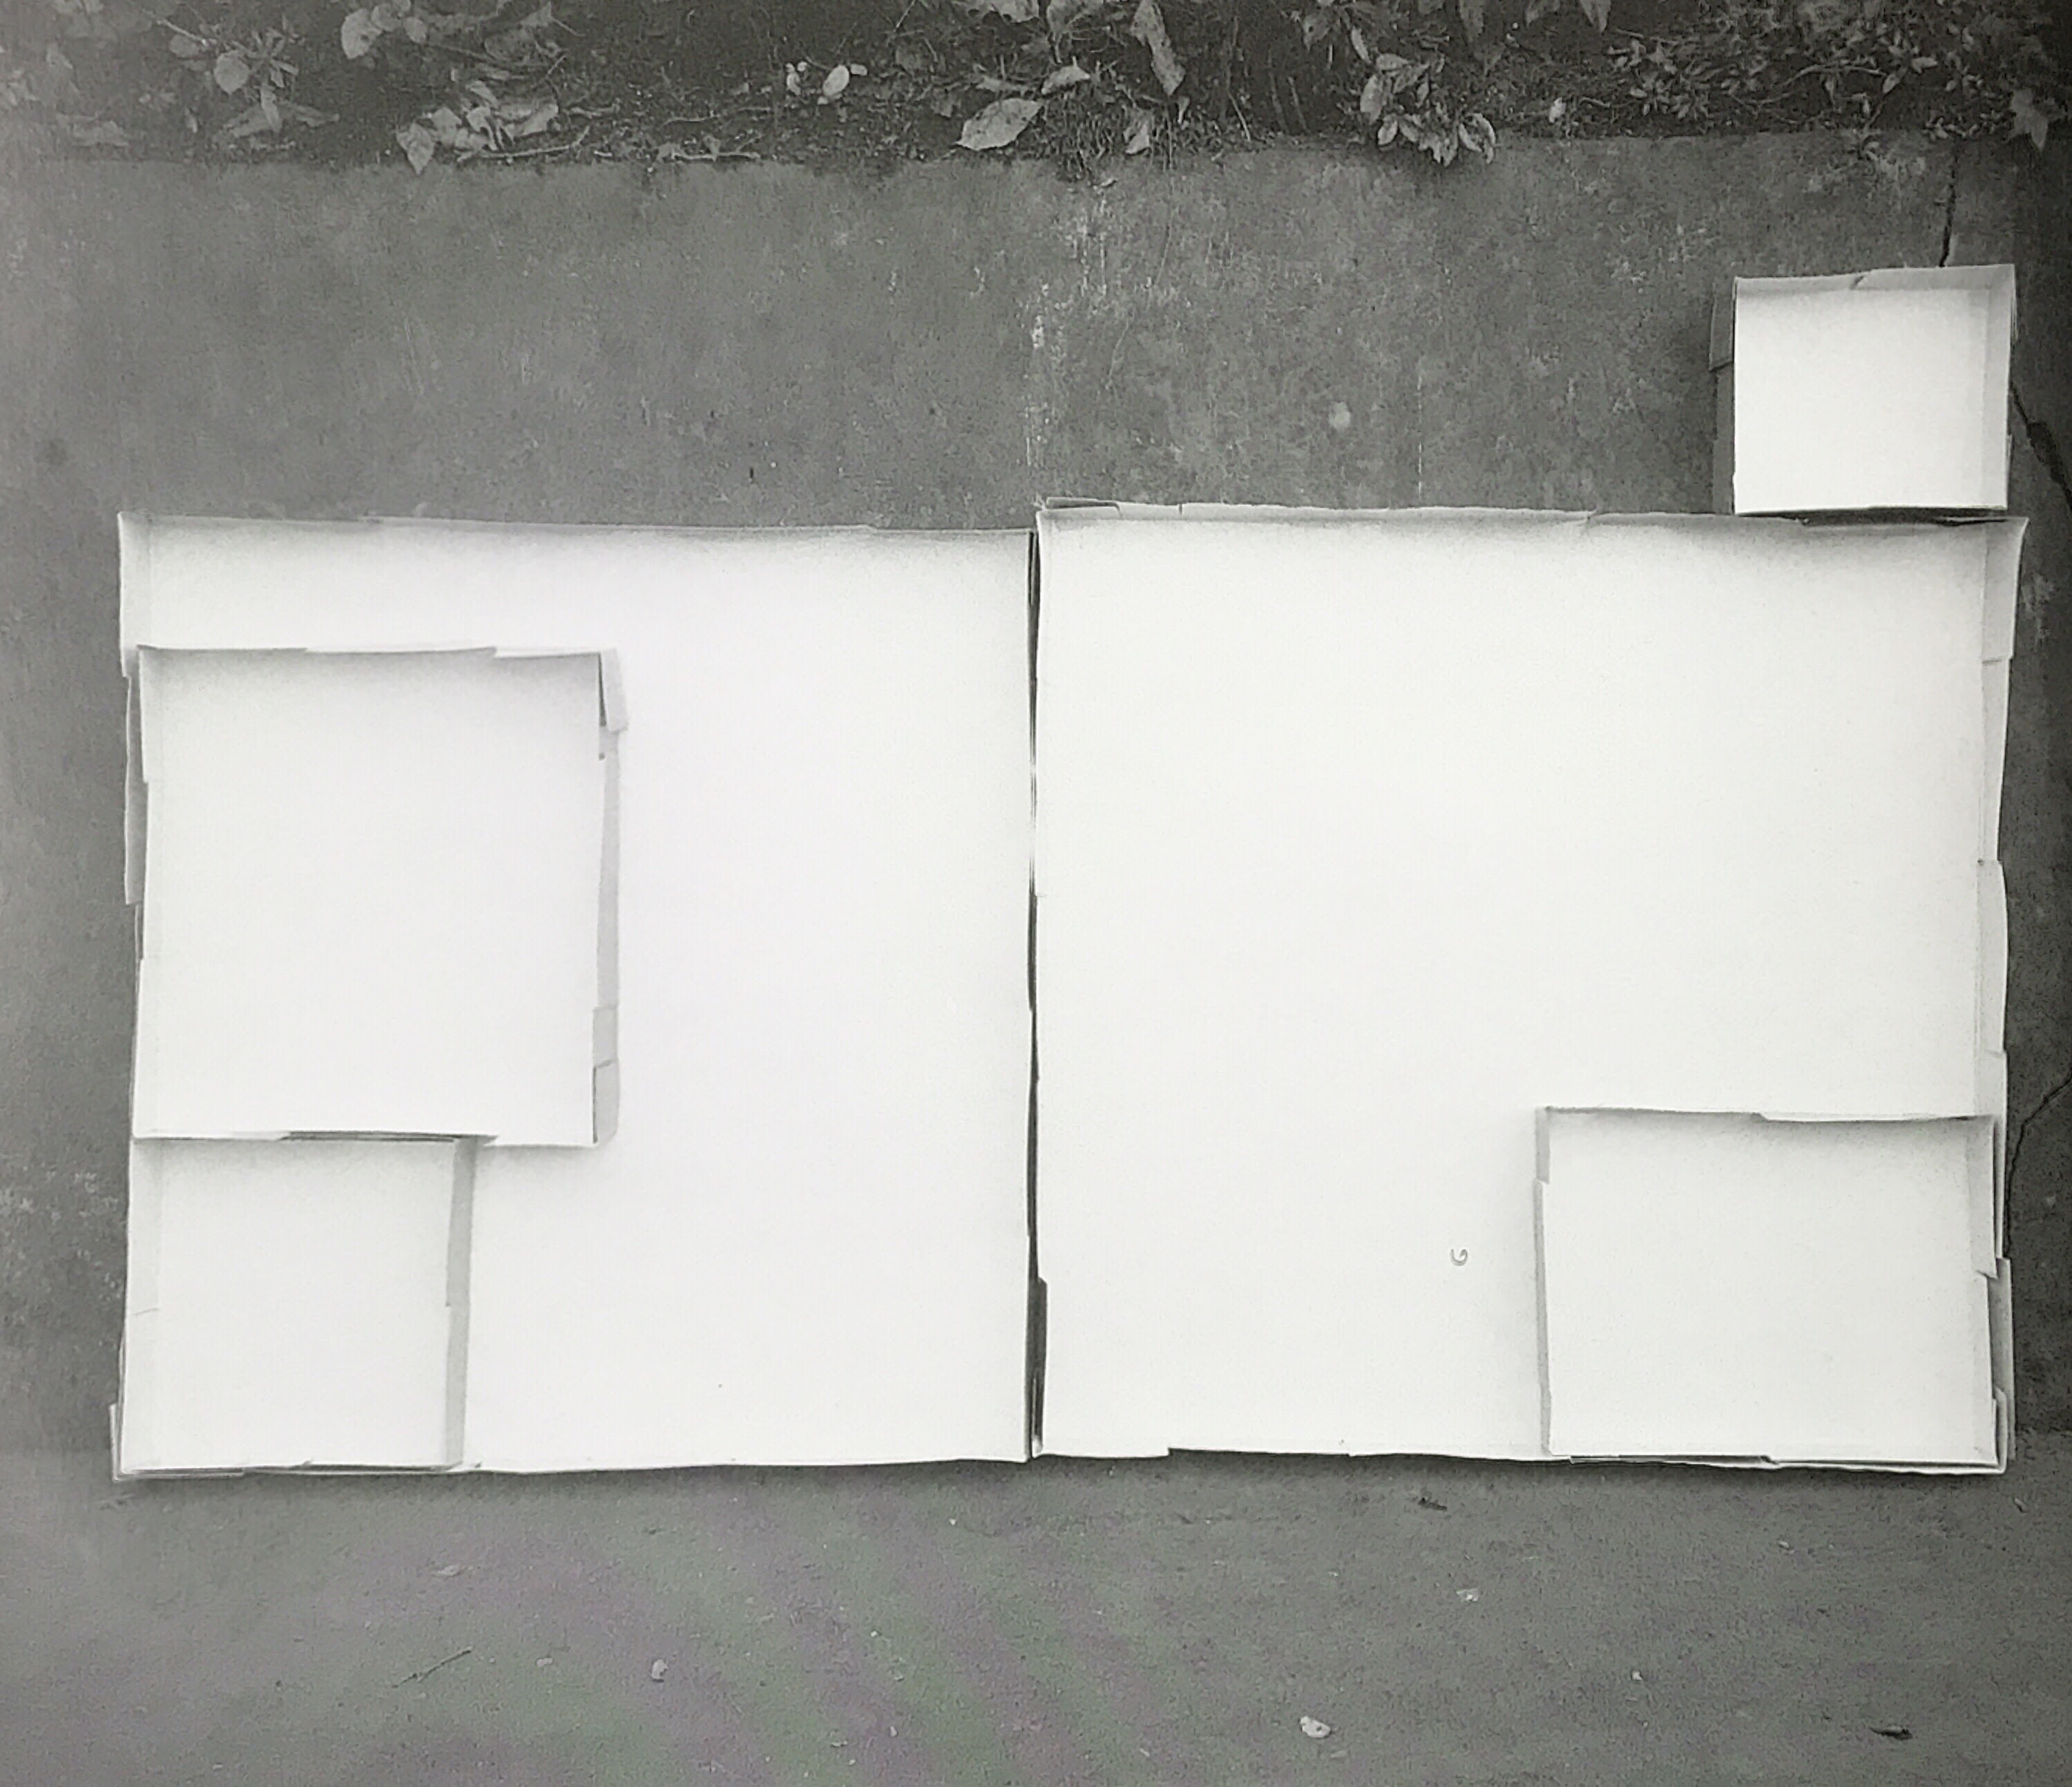 スクウェア・ポンド―――明 カラー鉄板、ホワイト・グレー 2m10cm x 1m30cm x 7cm